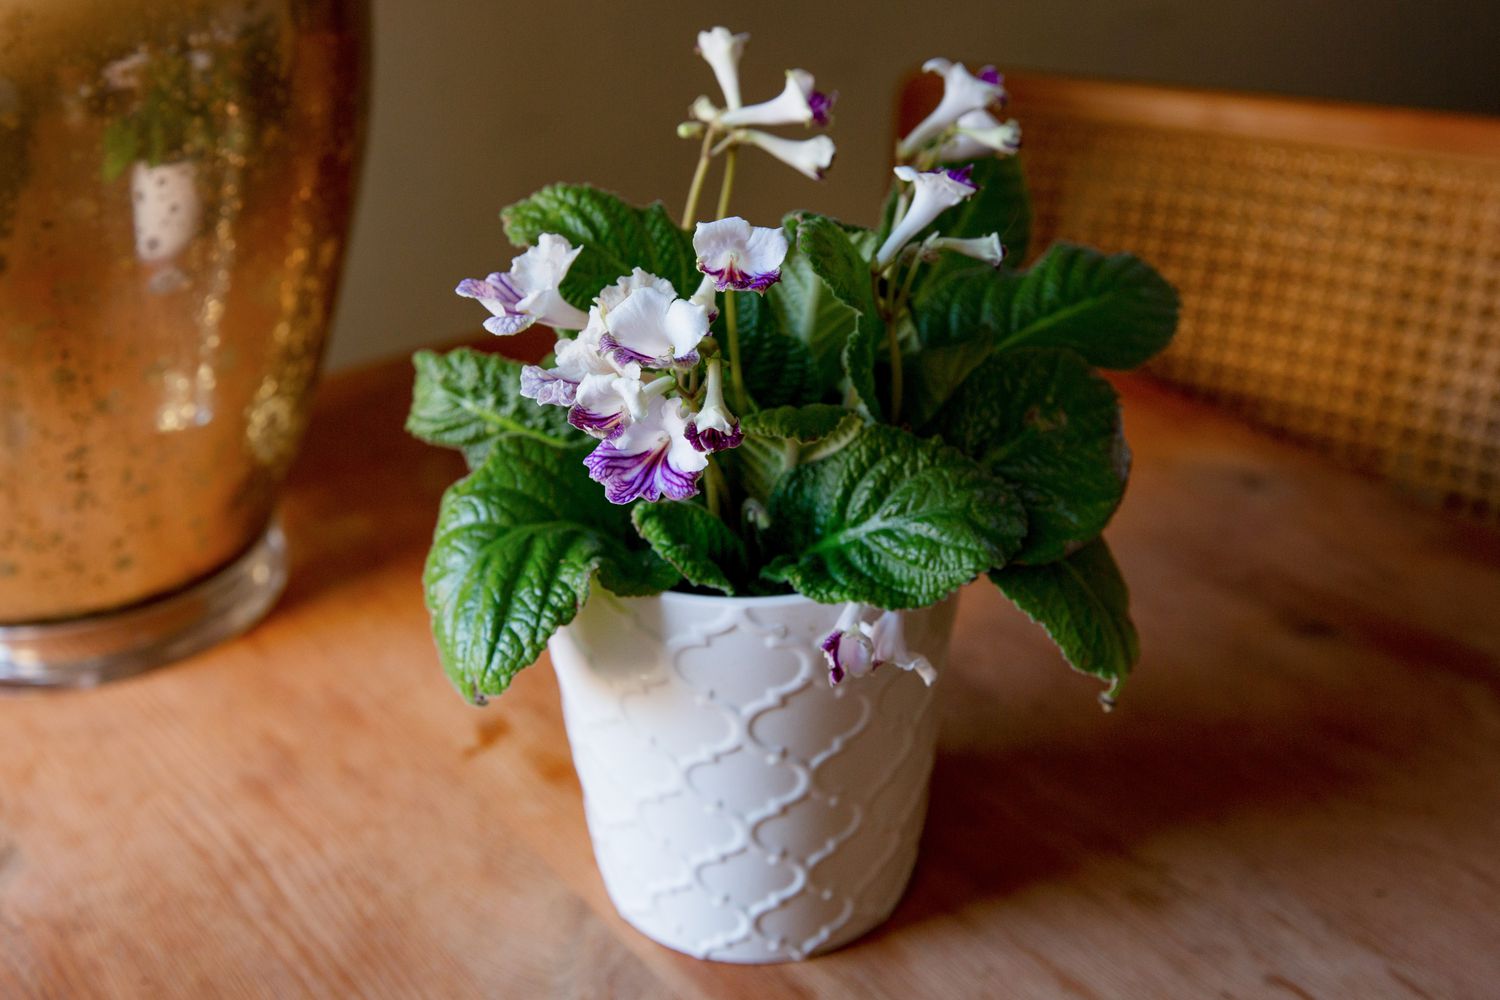 Planta Streptocarpus com flores brancas e roxas em vaso branco sobre superfície de madeira